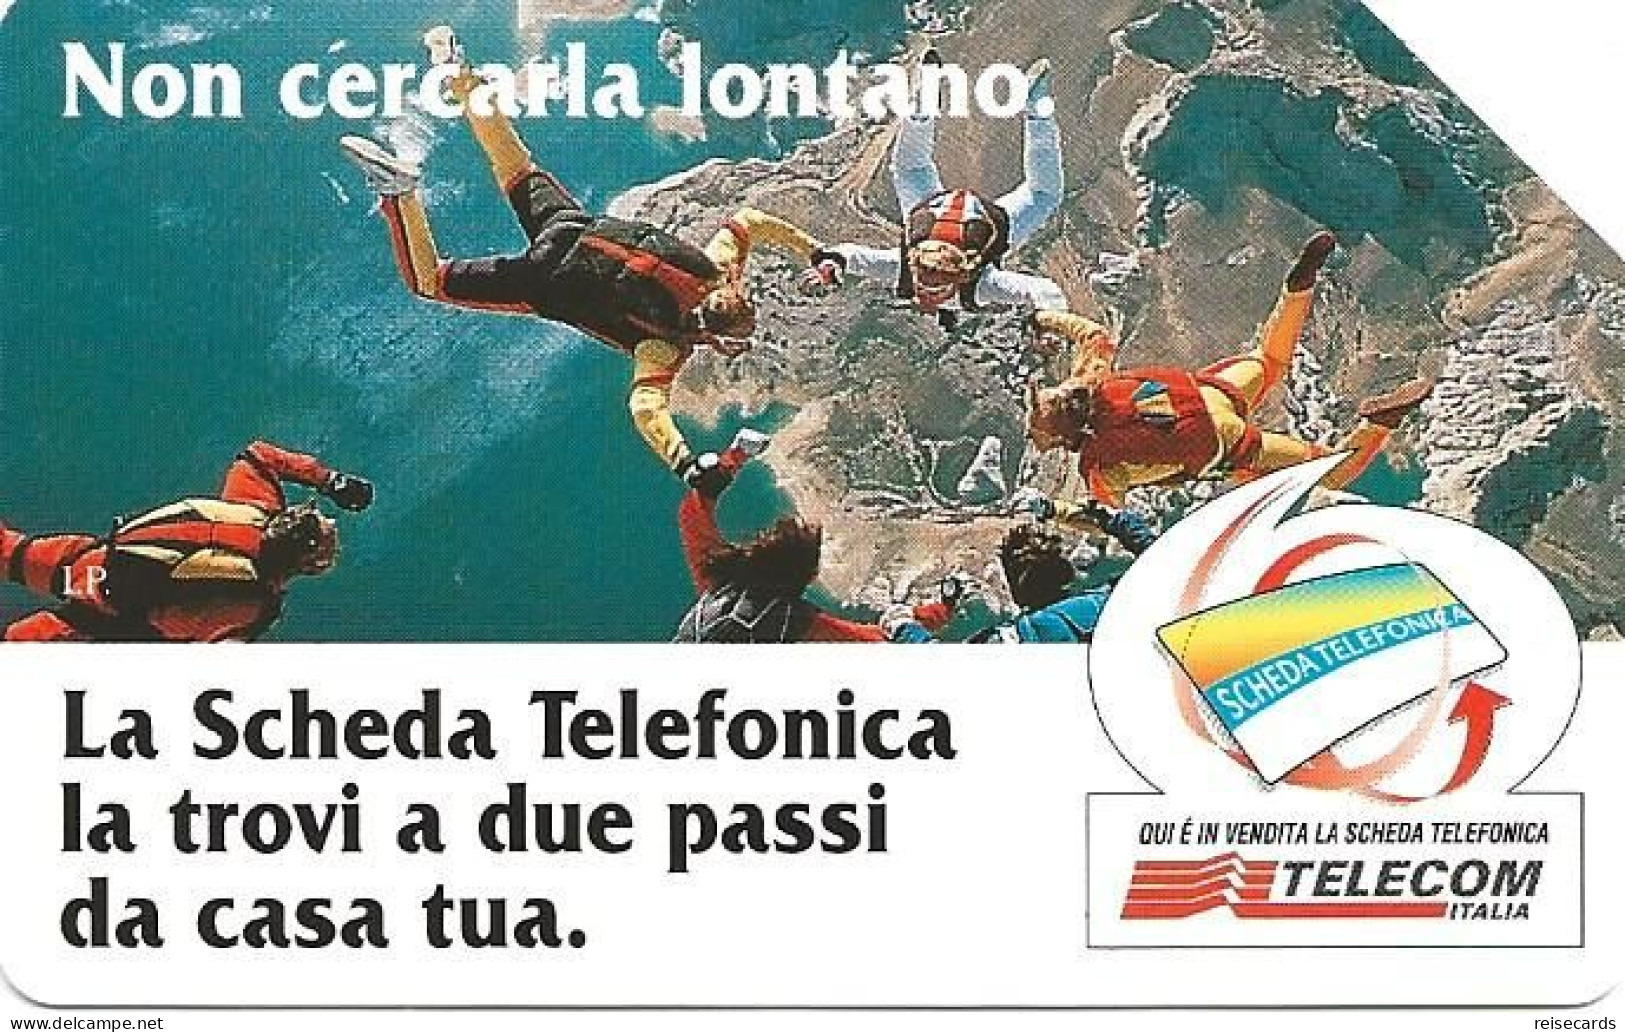 Italy: Telecom Italia - La Scheda Telefonica, Non Cercarla Lontano - Publiques Publicitaires